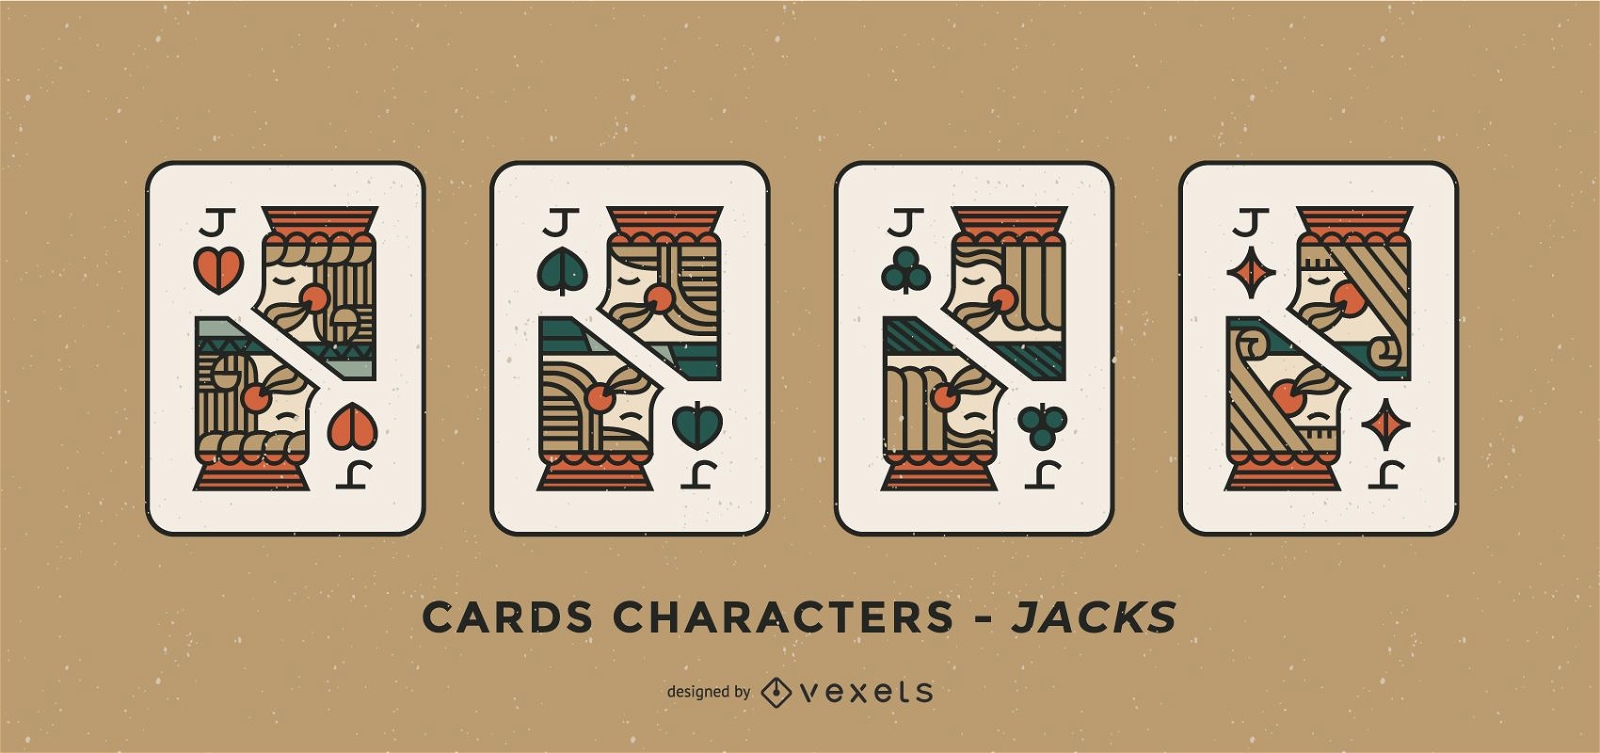 Joker Poker Cards Design Set